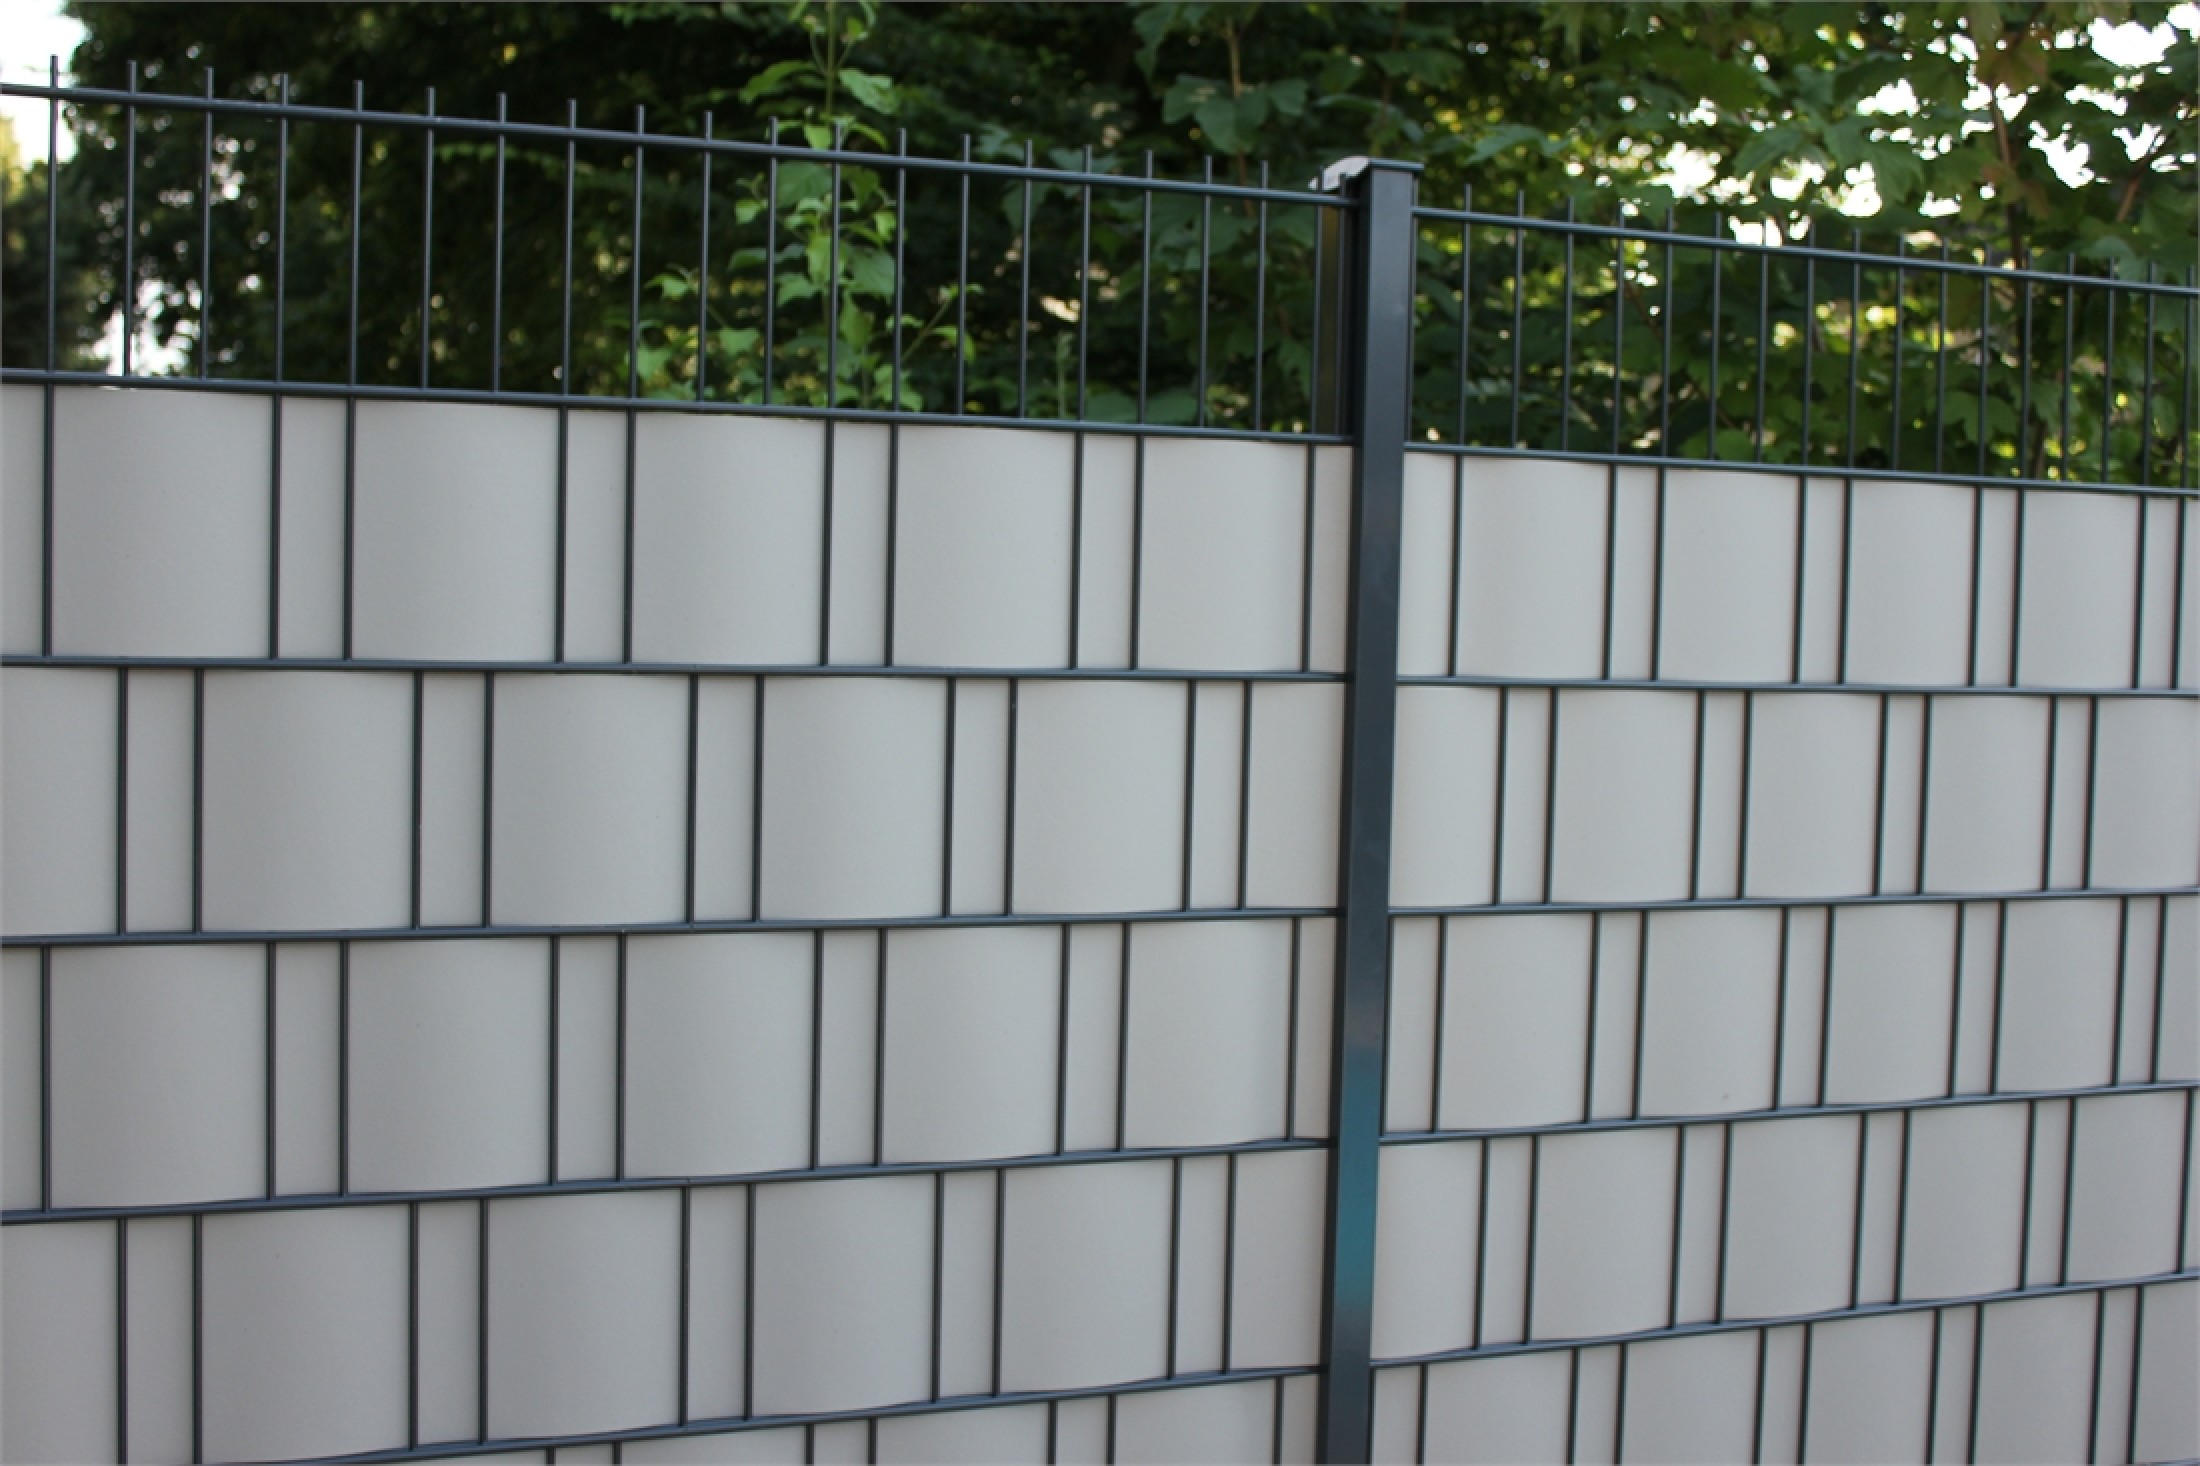 25 Stück Feste Sichtschutzstreifen Farbe anthrazit für Gittermattenzäune Zaun 